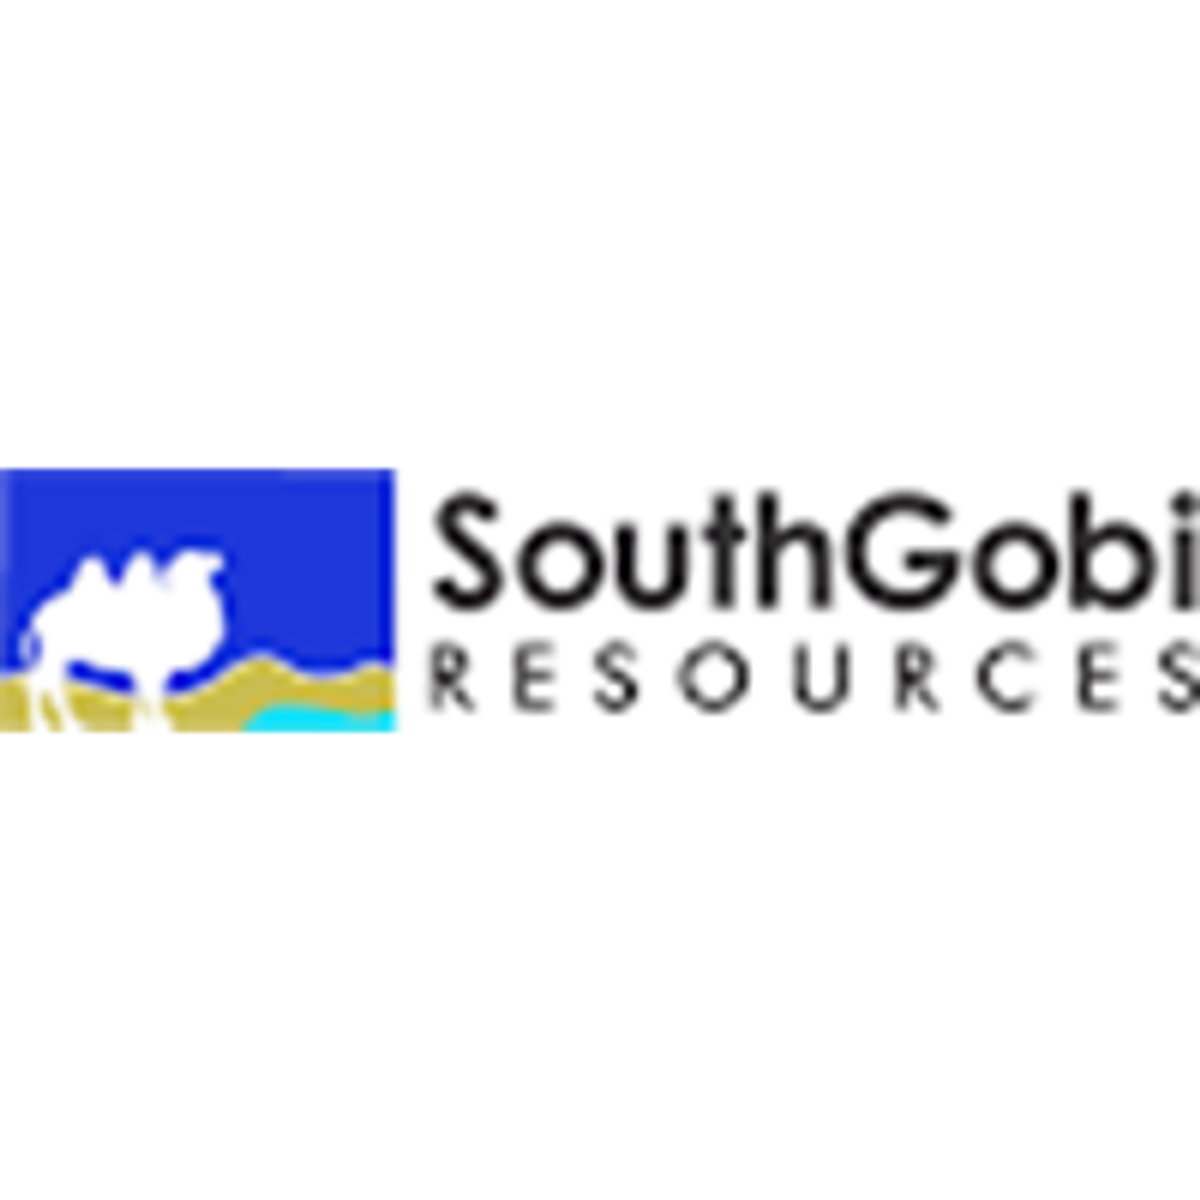 SouthGobi Announces Second Quarter 2022 Financial and Operating Results